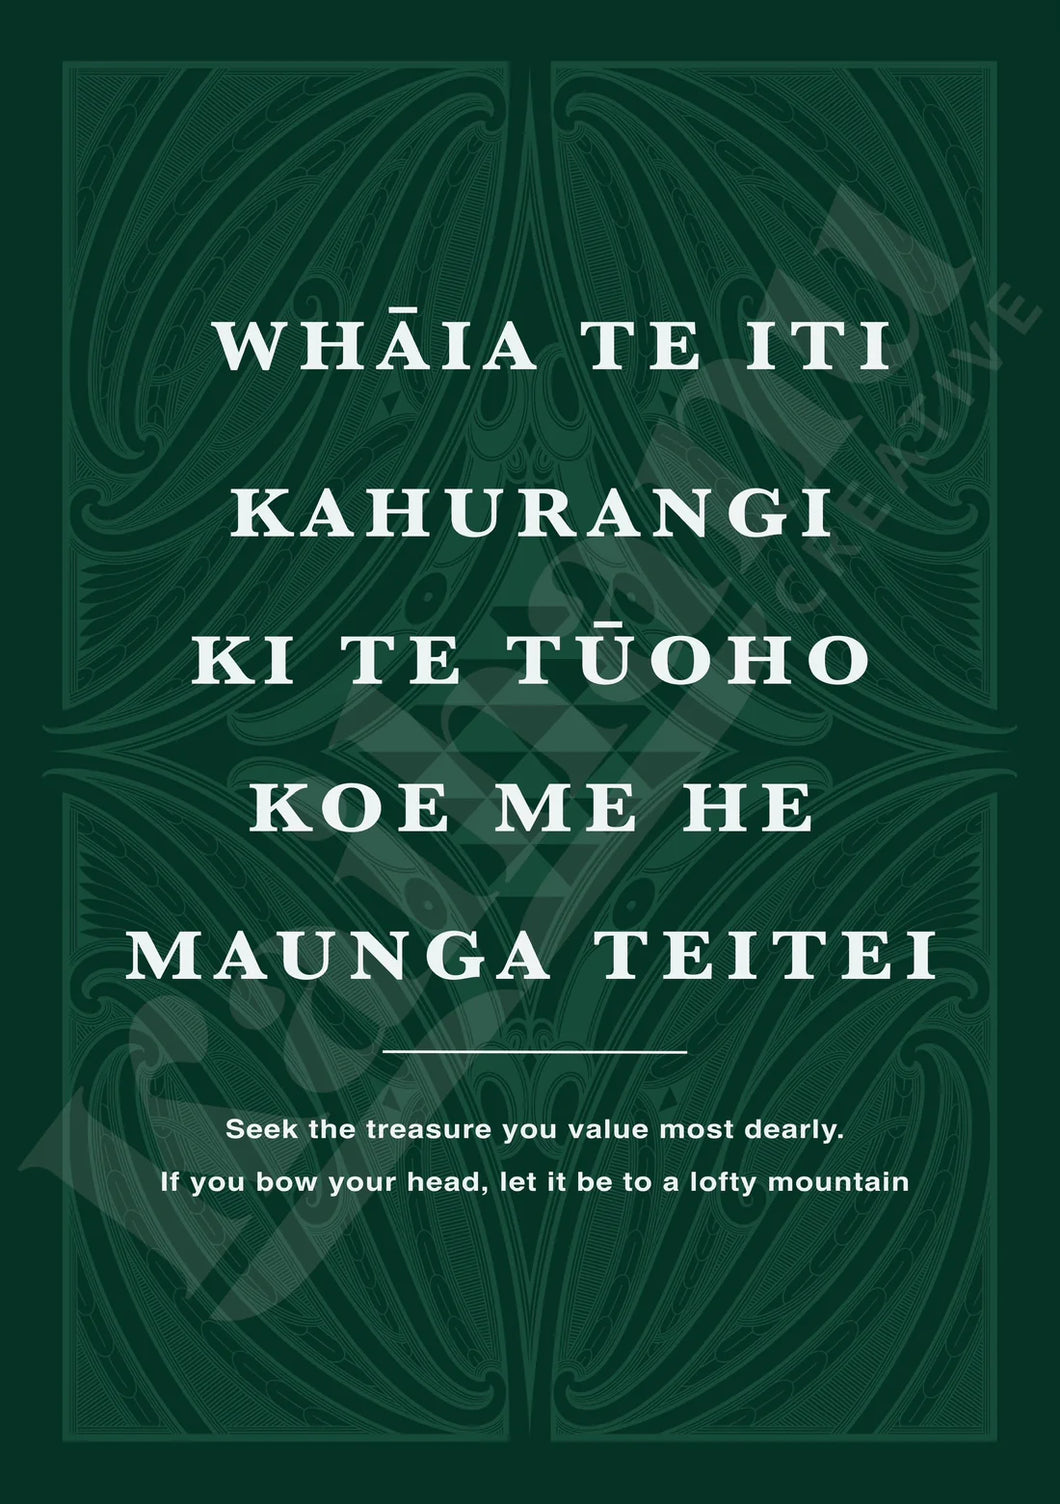 Kahurangi print (Whakatauki)